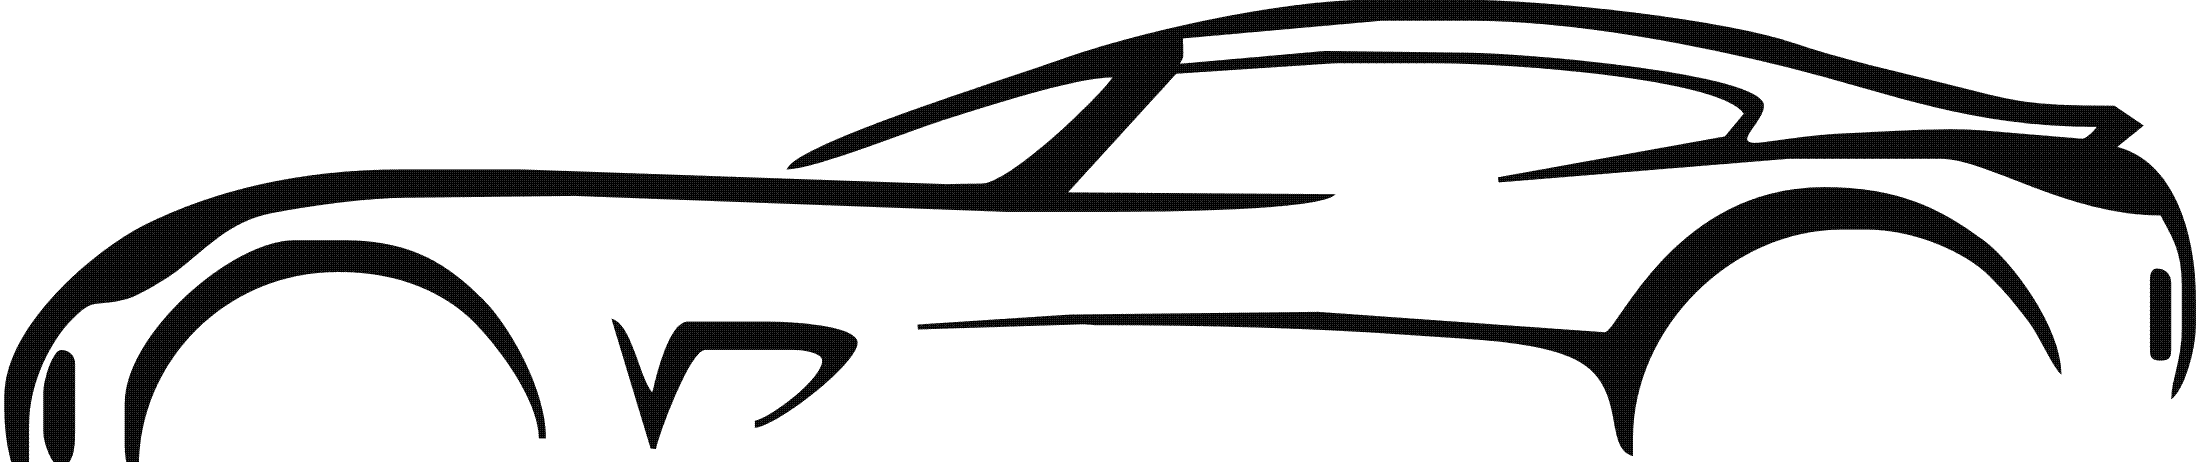 Car Outline Logo